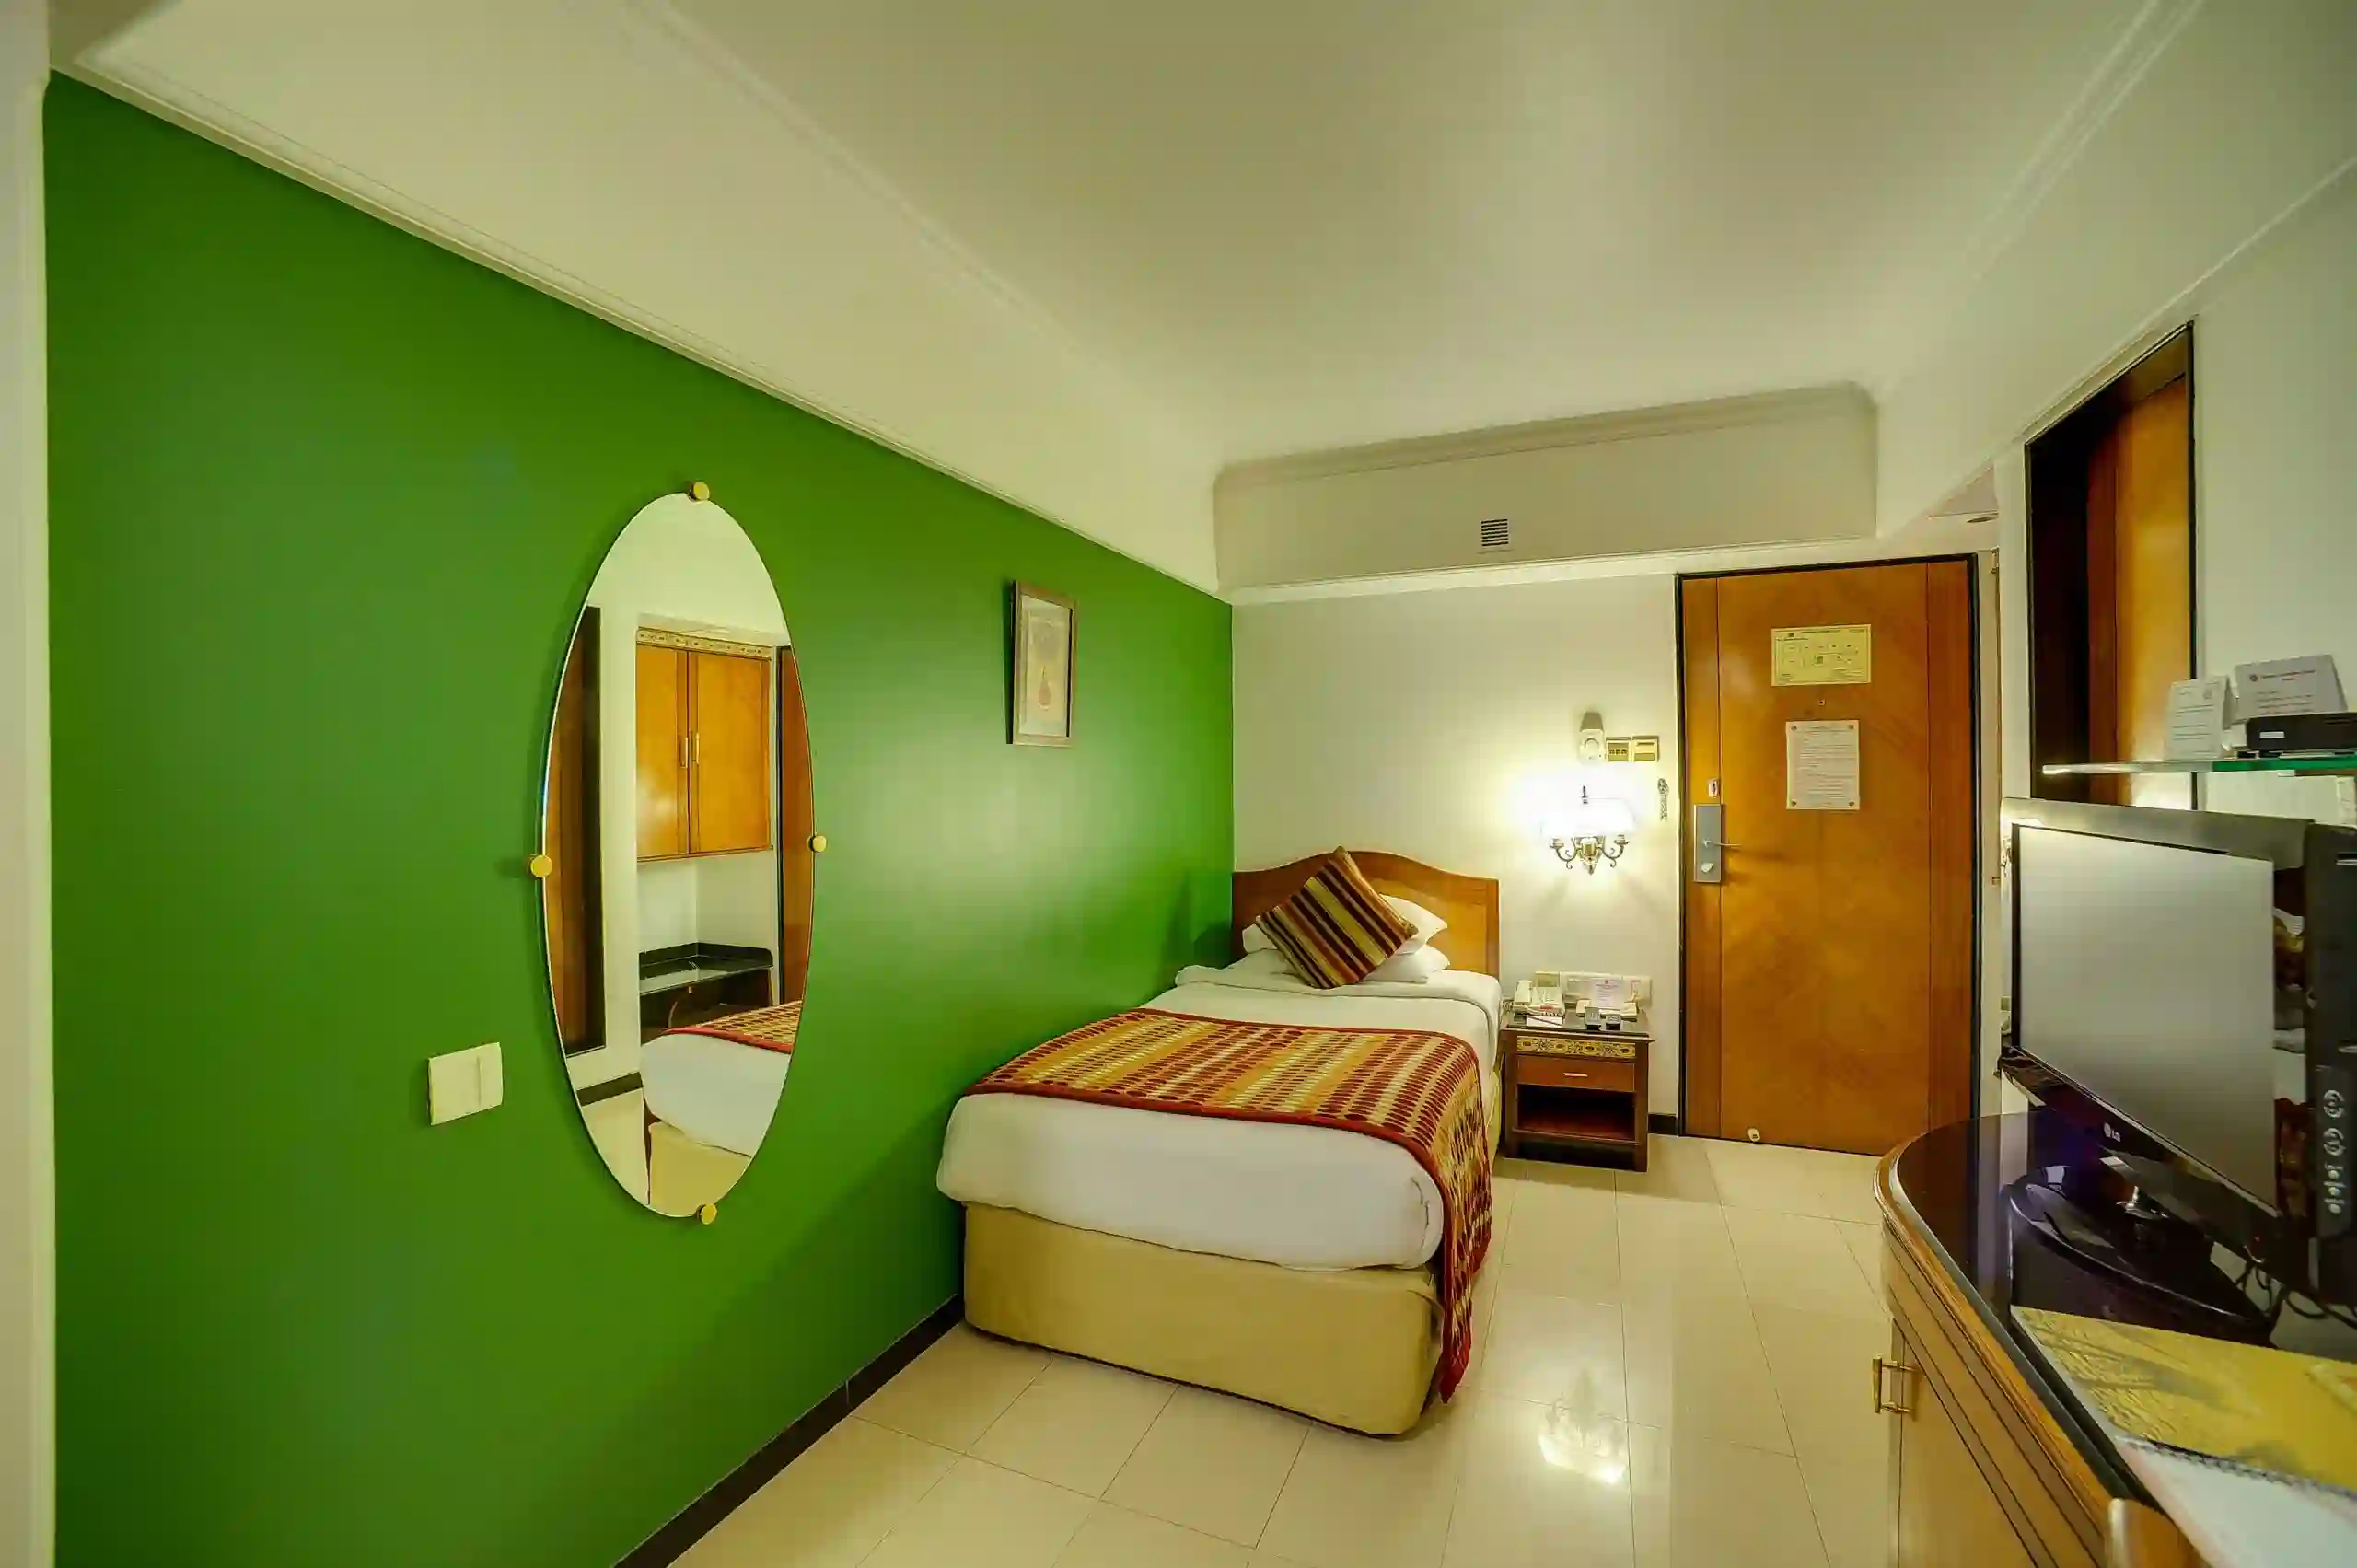 Standard-Room-Hotel in Dadar Mumbai-Ramee Guestline